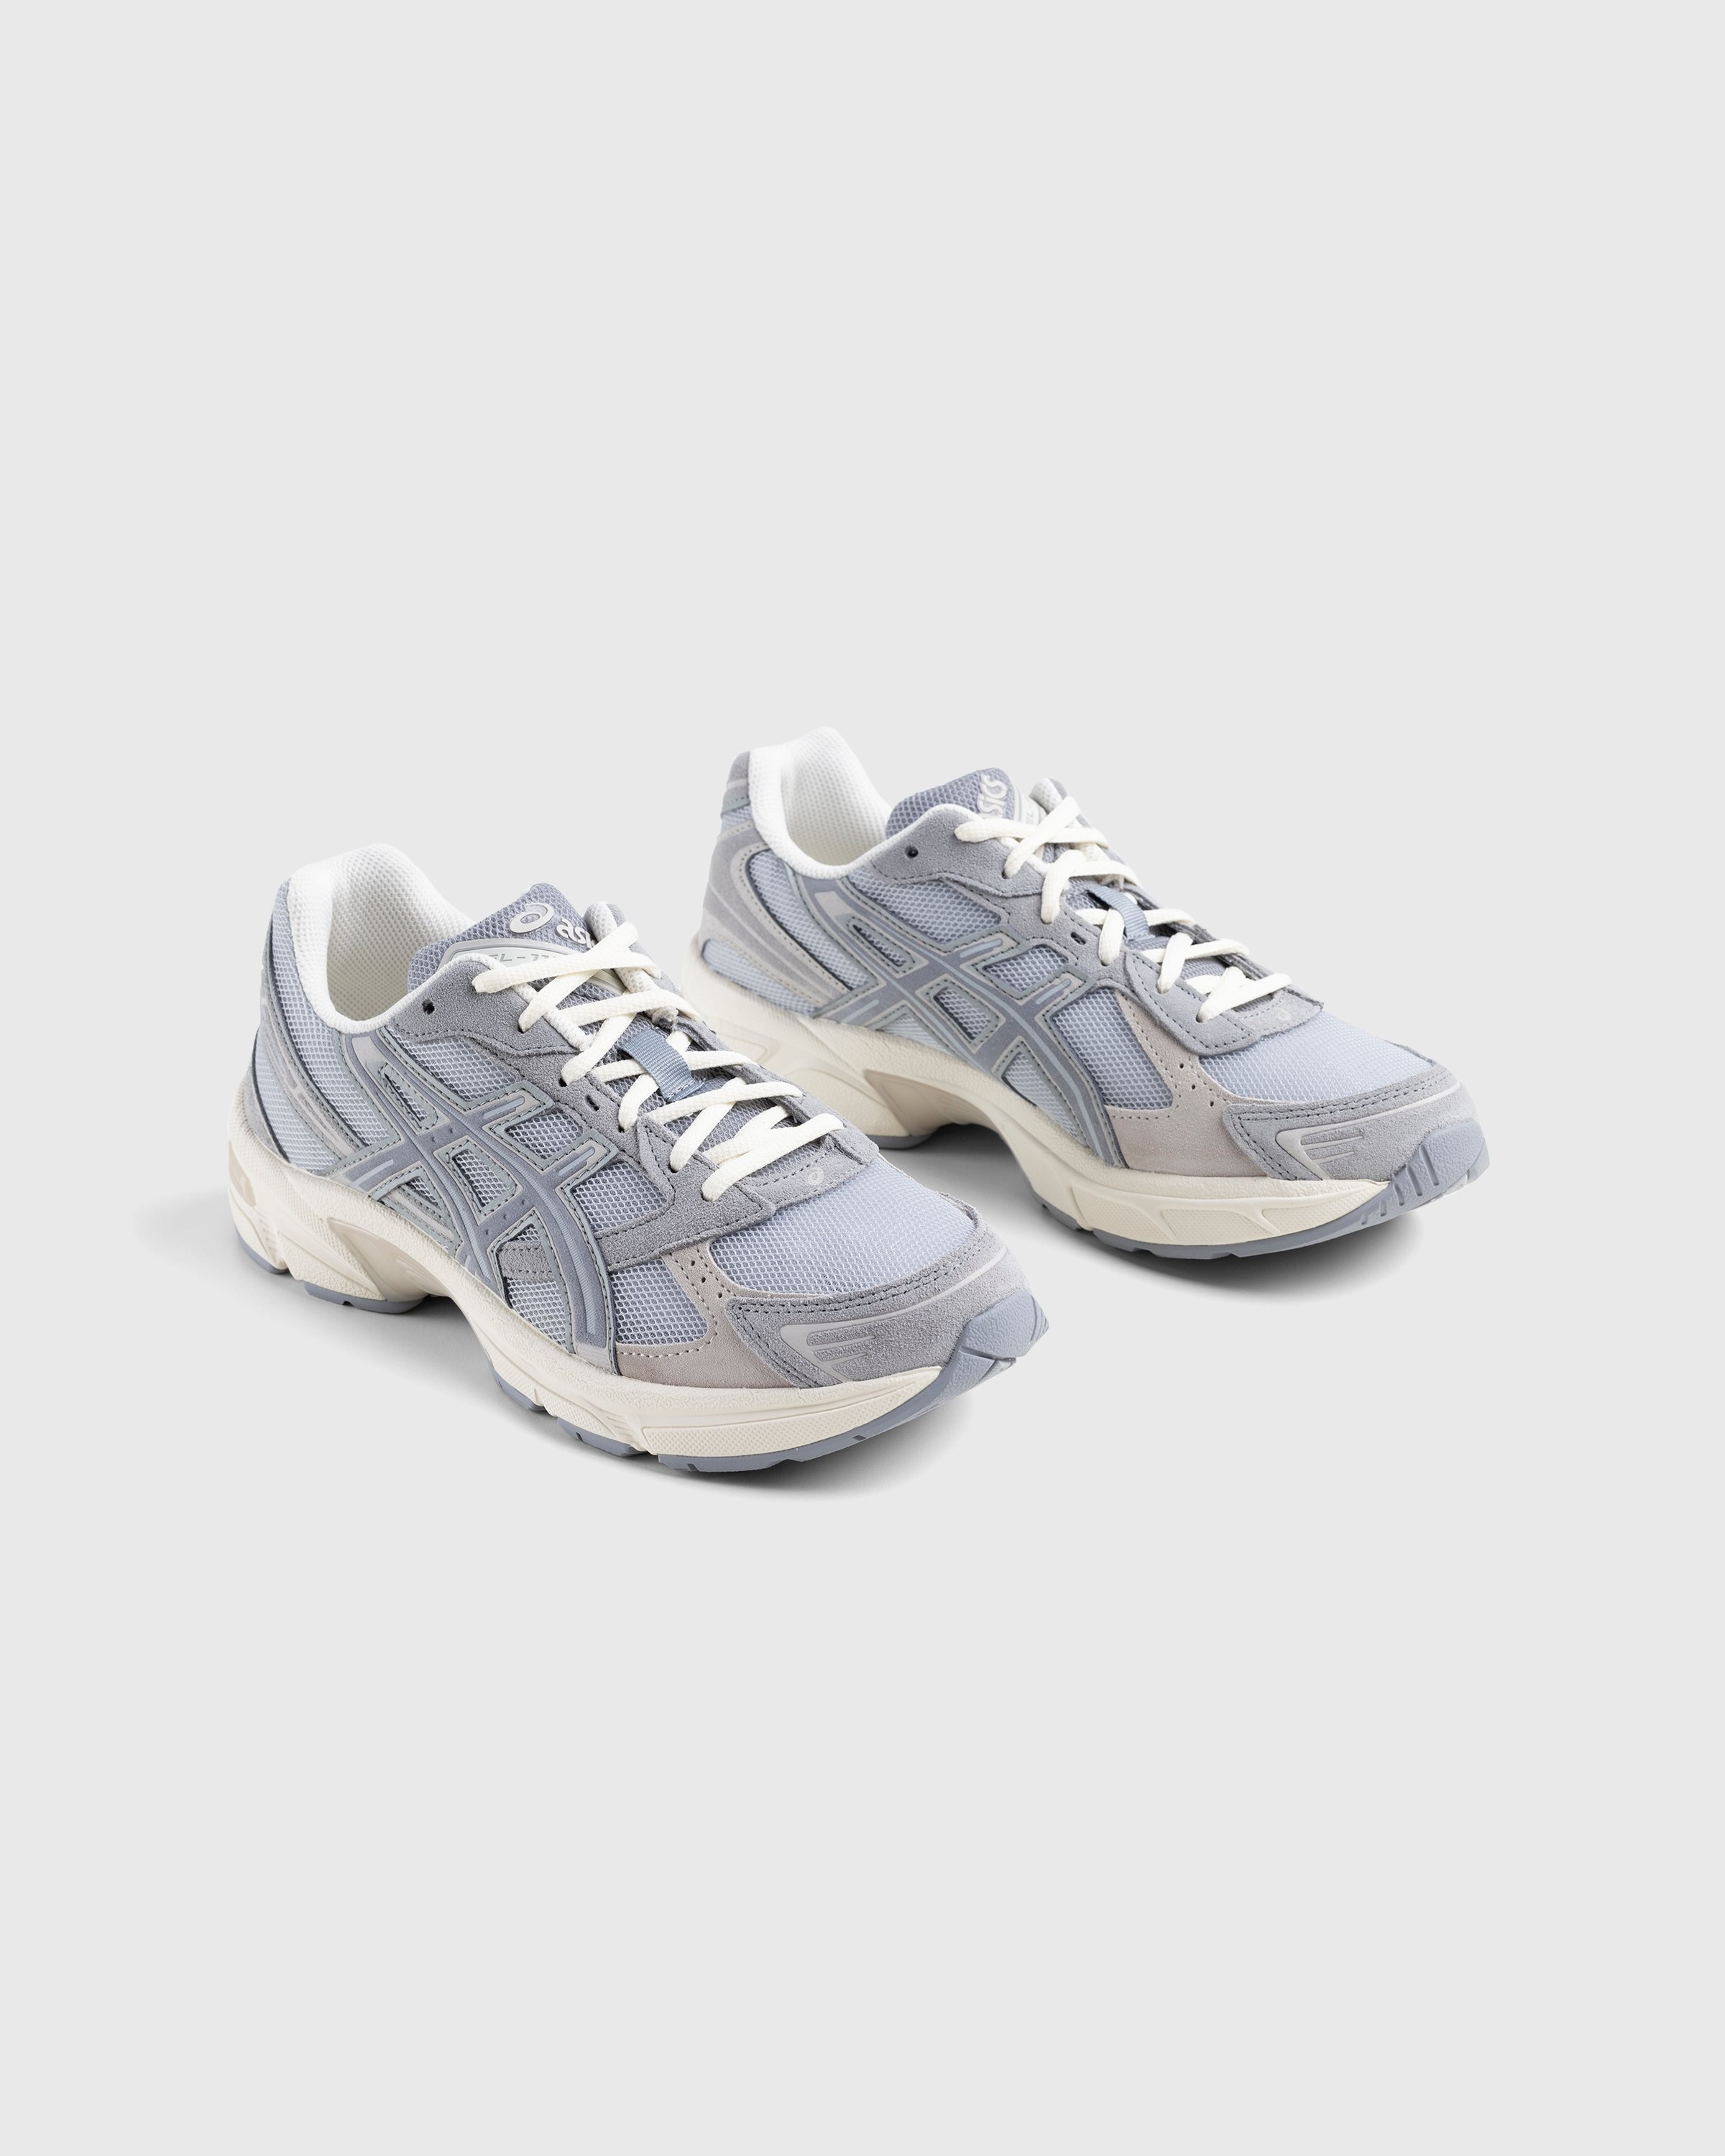 asics – Gel-1130 Piedmont Grey/Sheet Rock - Low Top Sneakers - Grey - Image 2